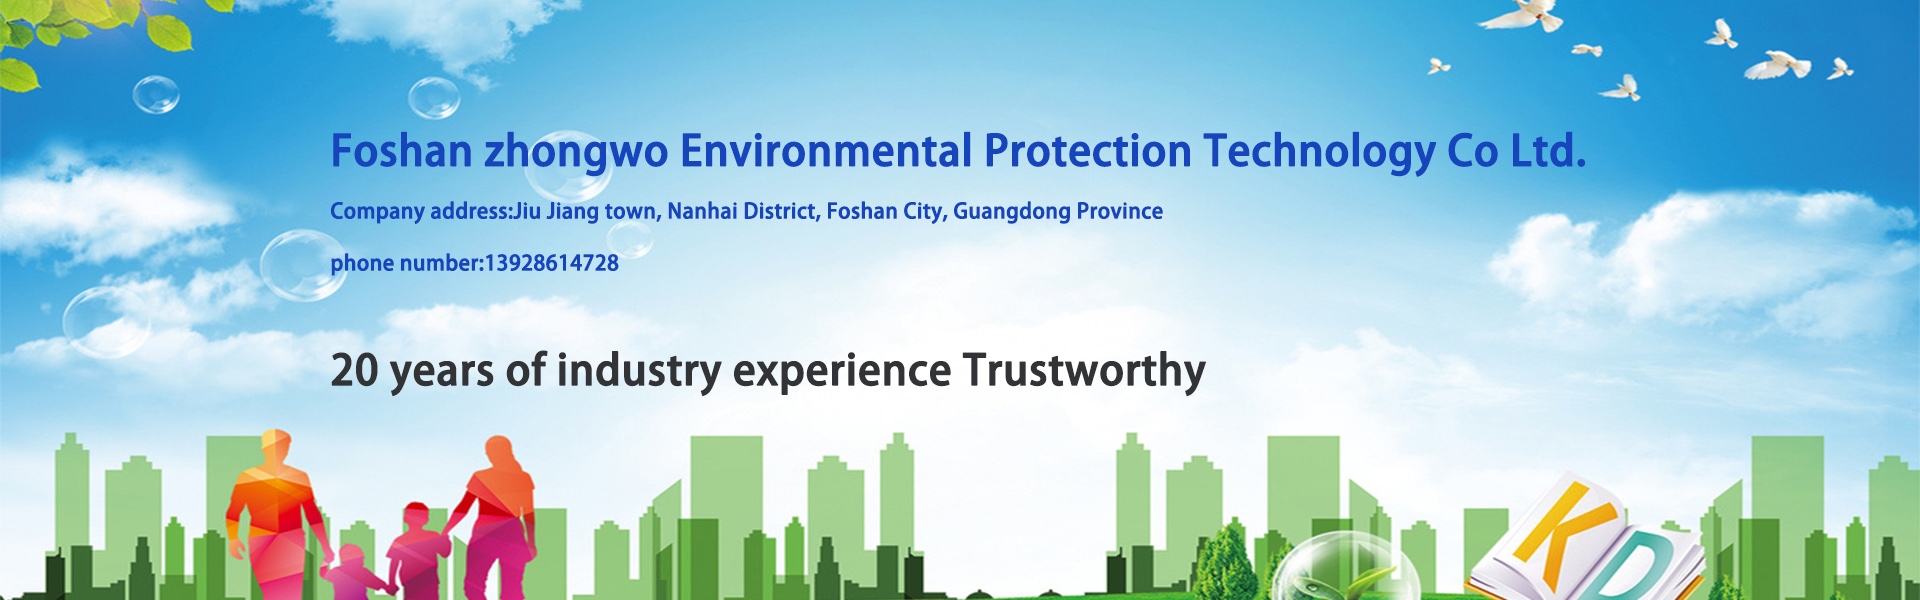 물 처리 장비, 물 정화 장비, 환경 보호 장비,Foshan zhongwo Environmental Protection Technology Co Ltd.